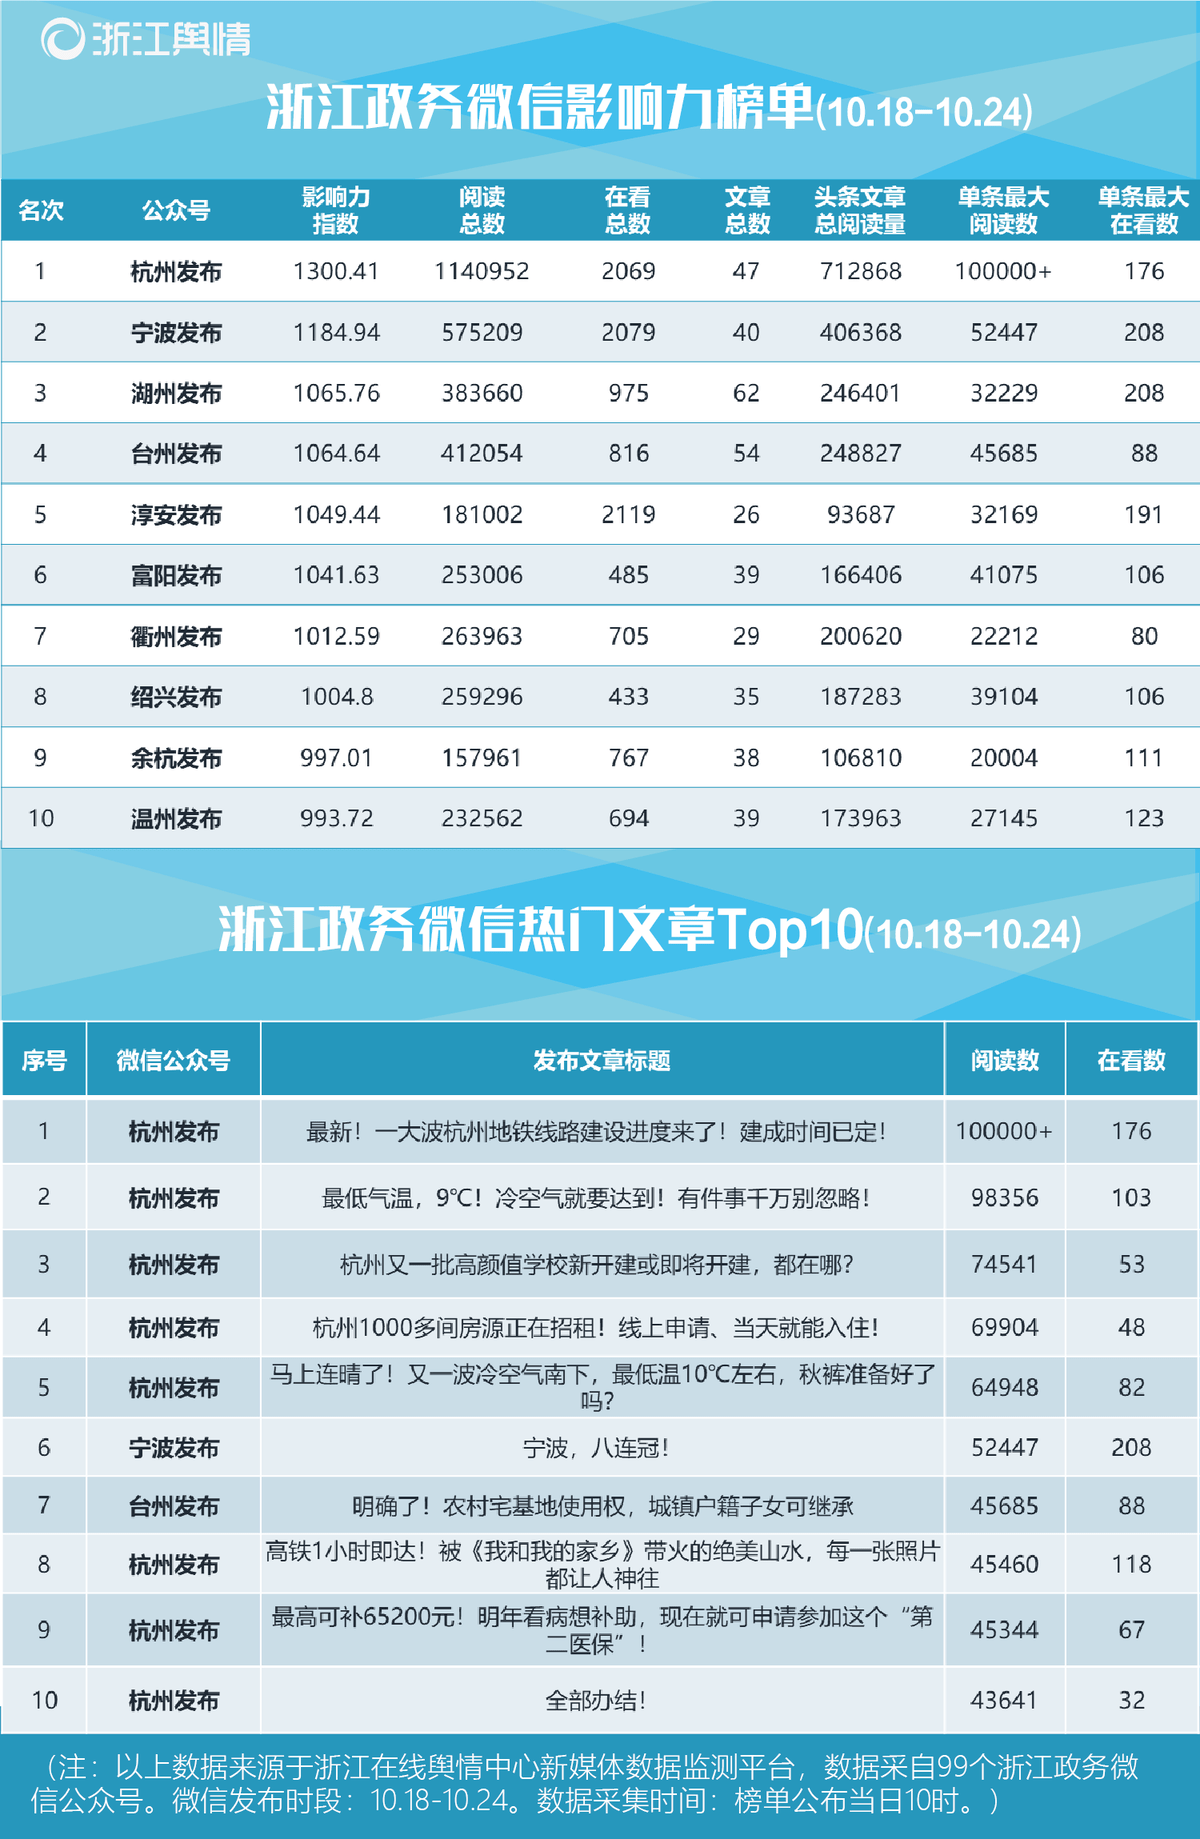 10.26-浙江政务微信影响力榜单-01.png